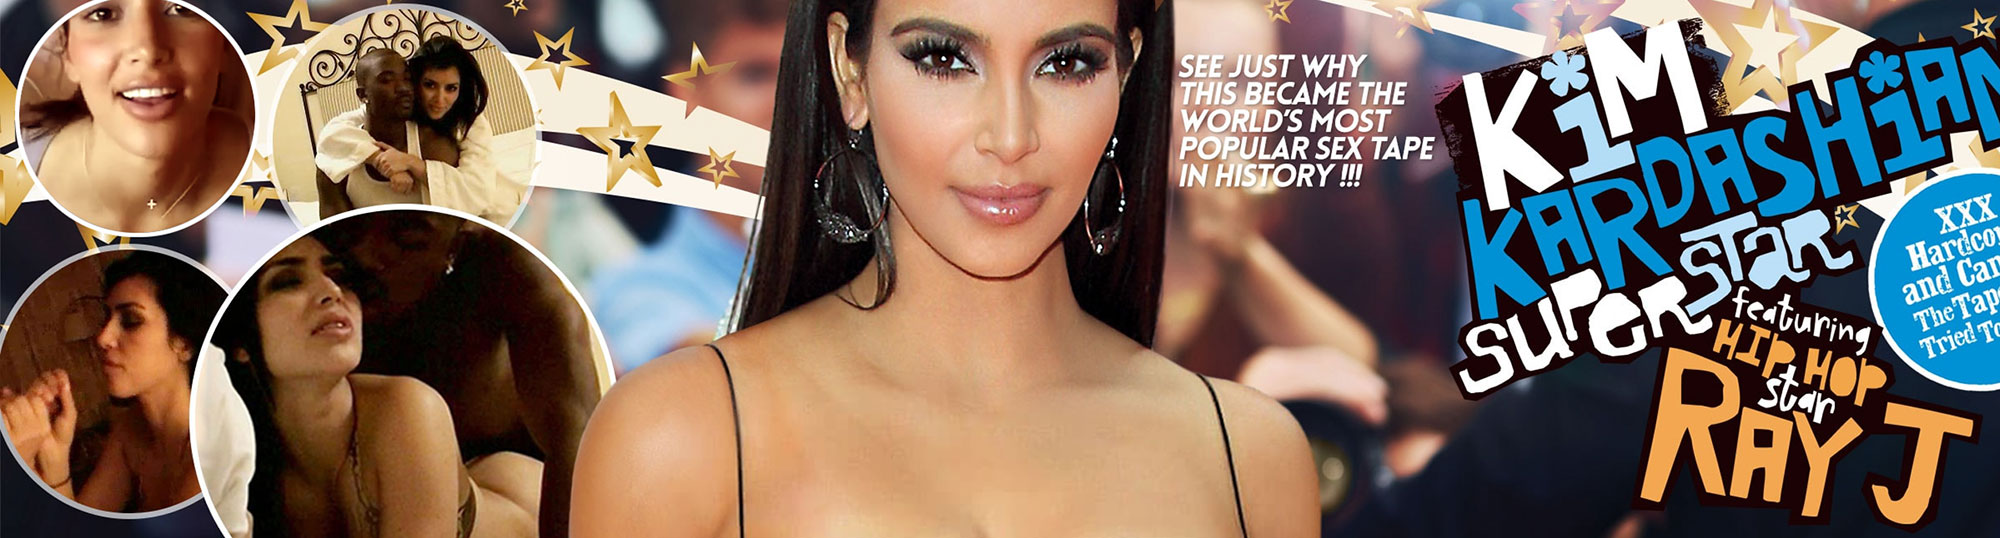 Kim Kardashian Sext Tape